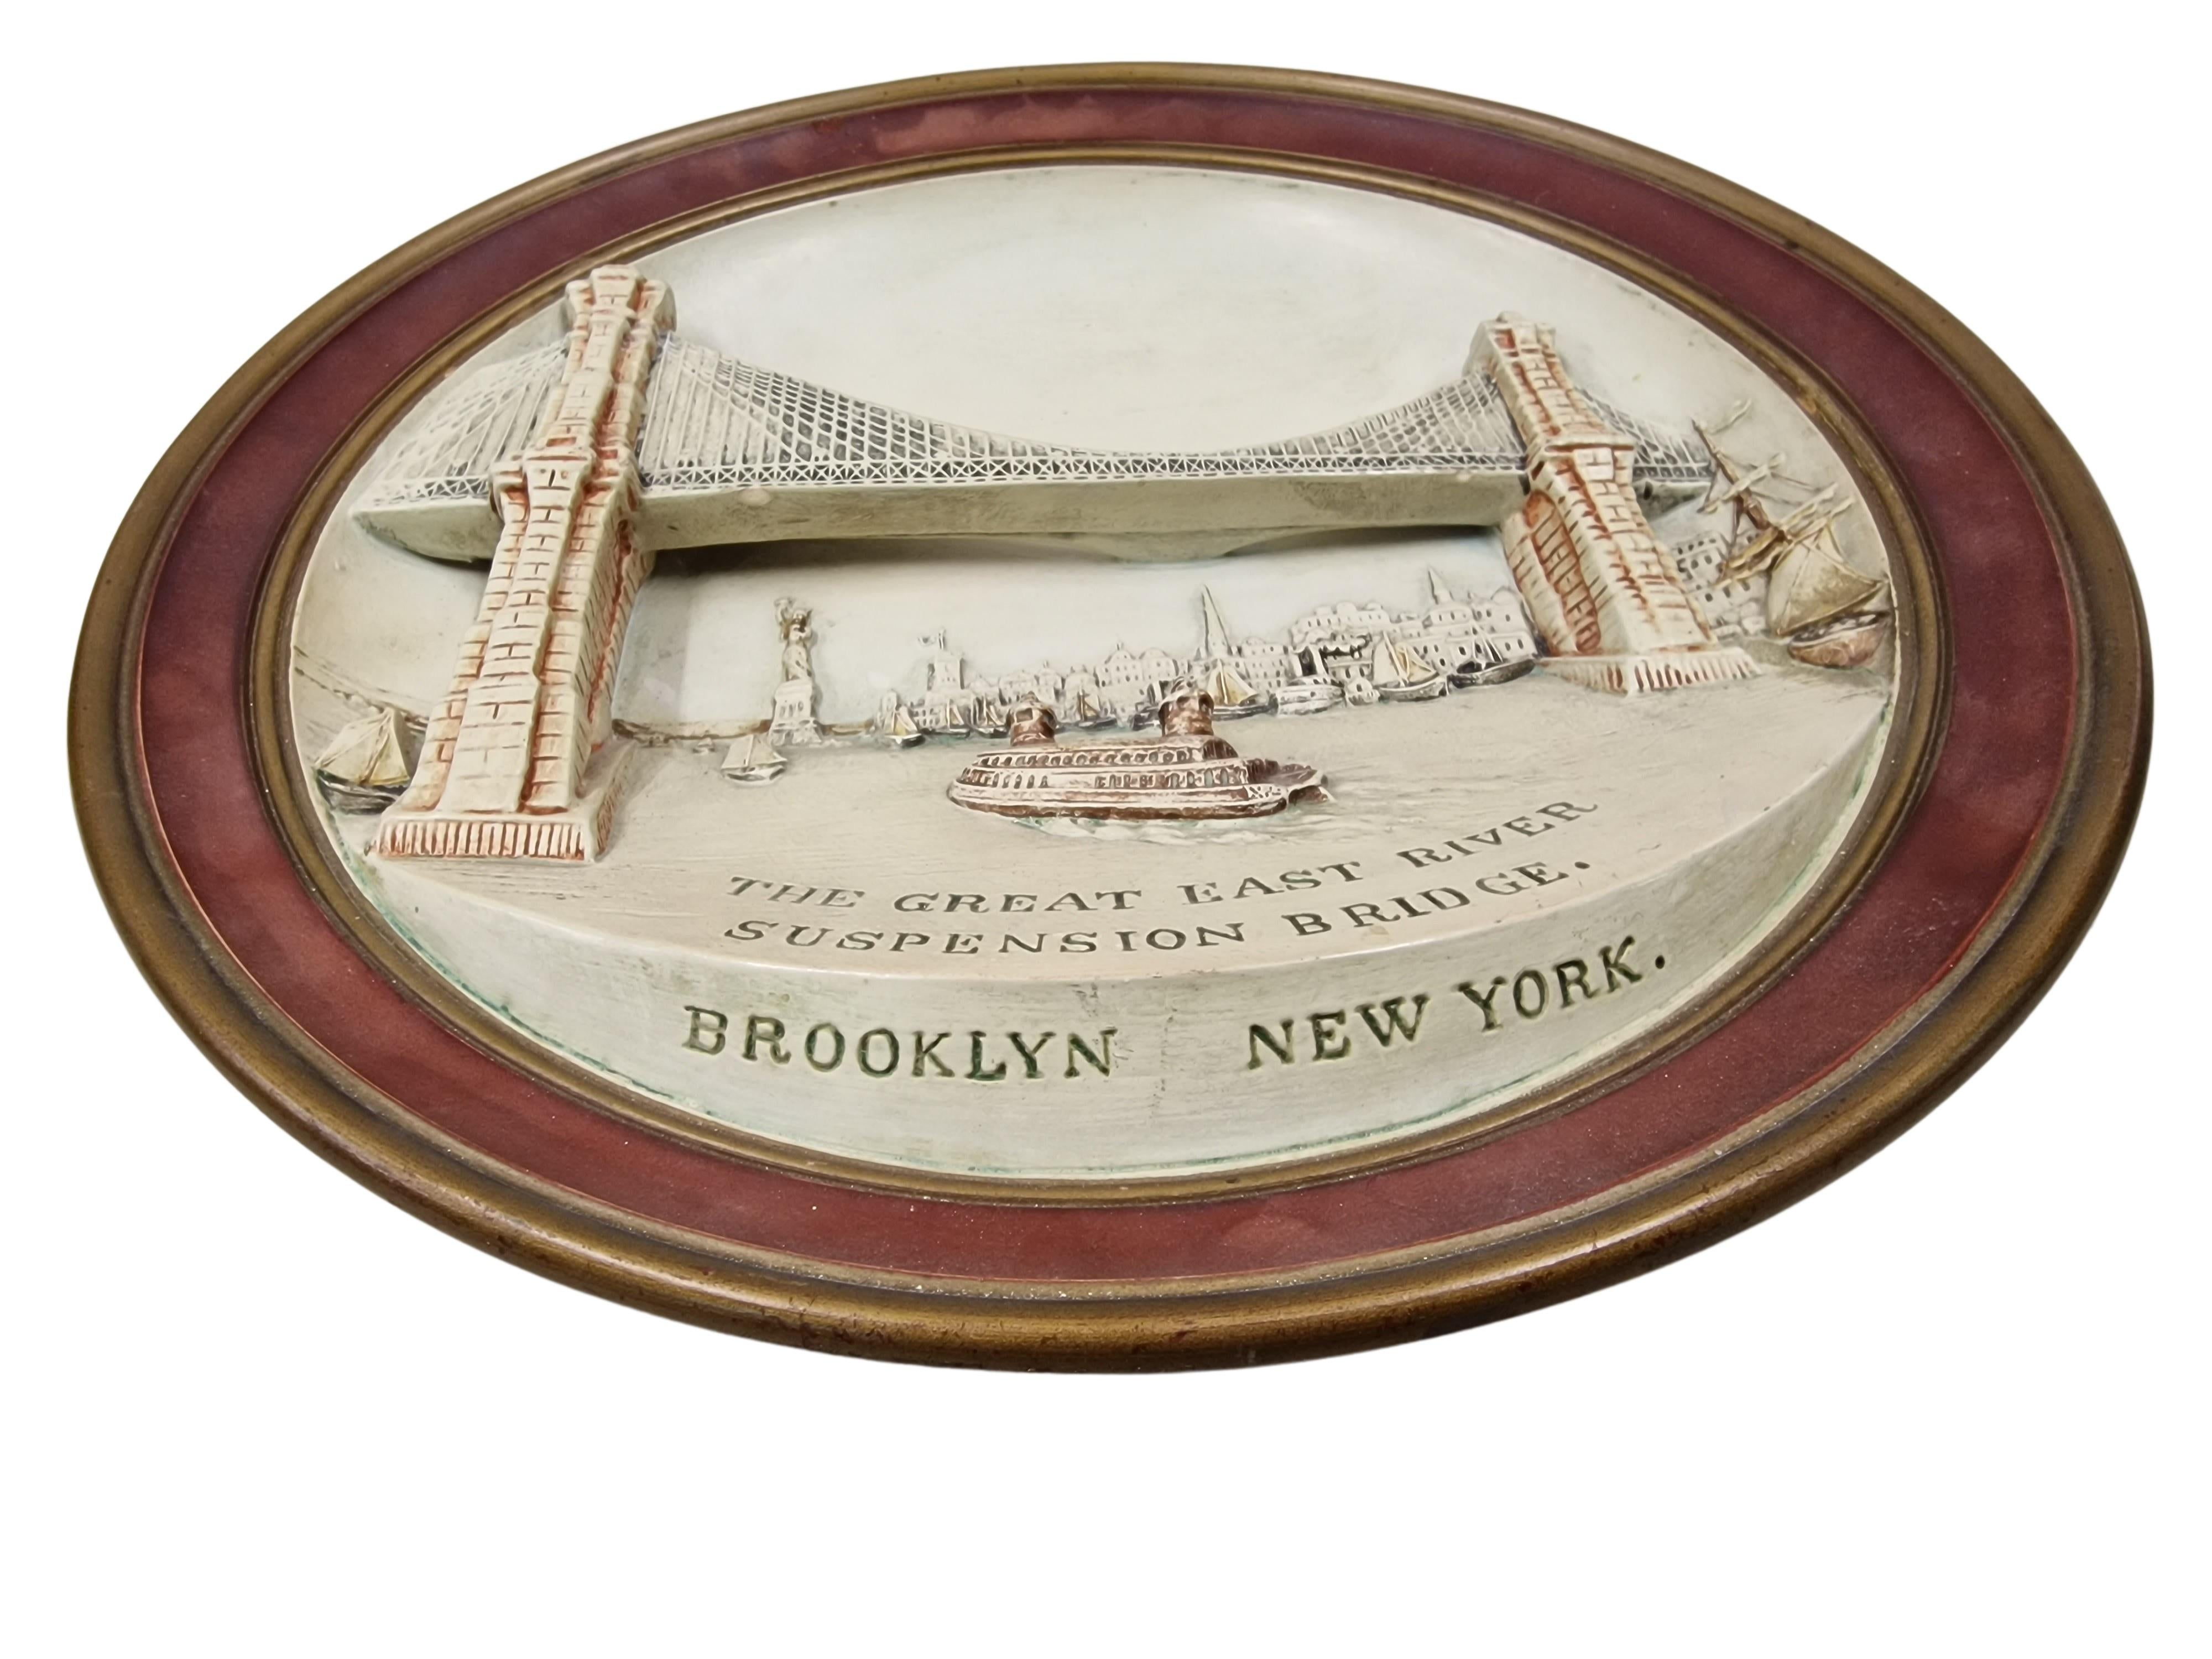 Un morceau d'histoire américaine !

Inauguré le 24 mai 1883, le pont de Brooklyn a été le premier à franchir l'East River. C'était également le plus long pont suspendu du monde au moment de son ouverture. La travée s'appelait à l'origine le New York